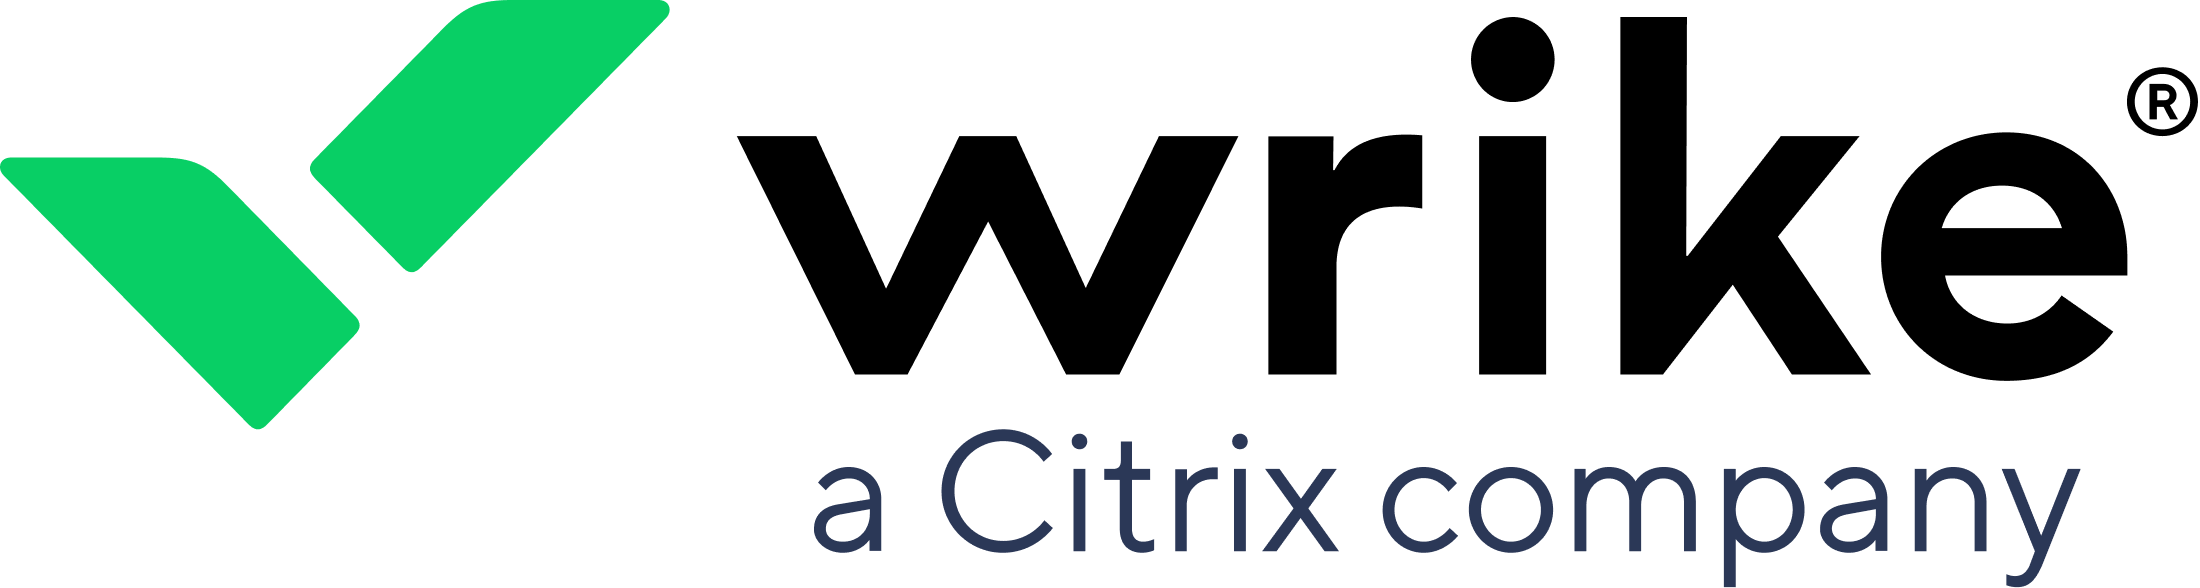 Wrike (a citrix company) logo